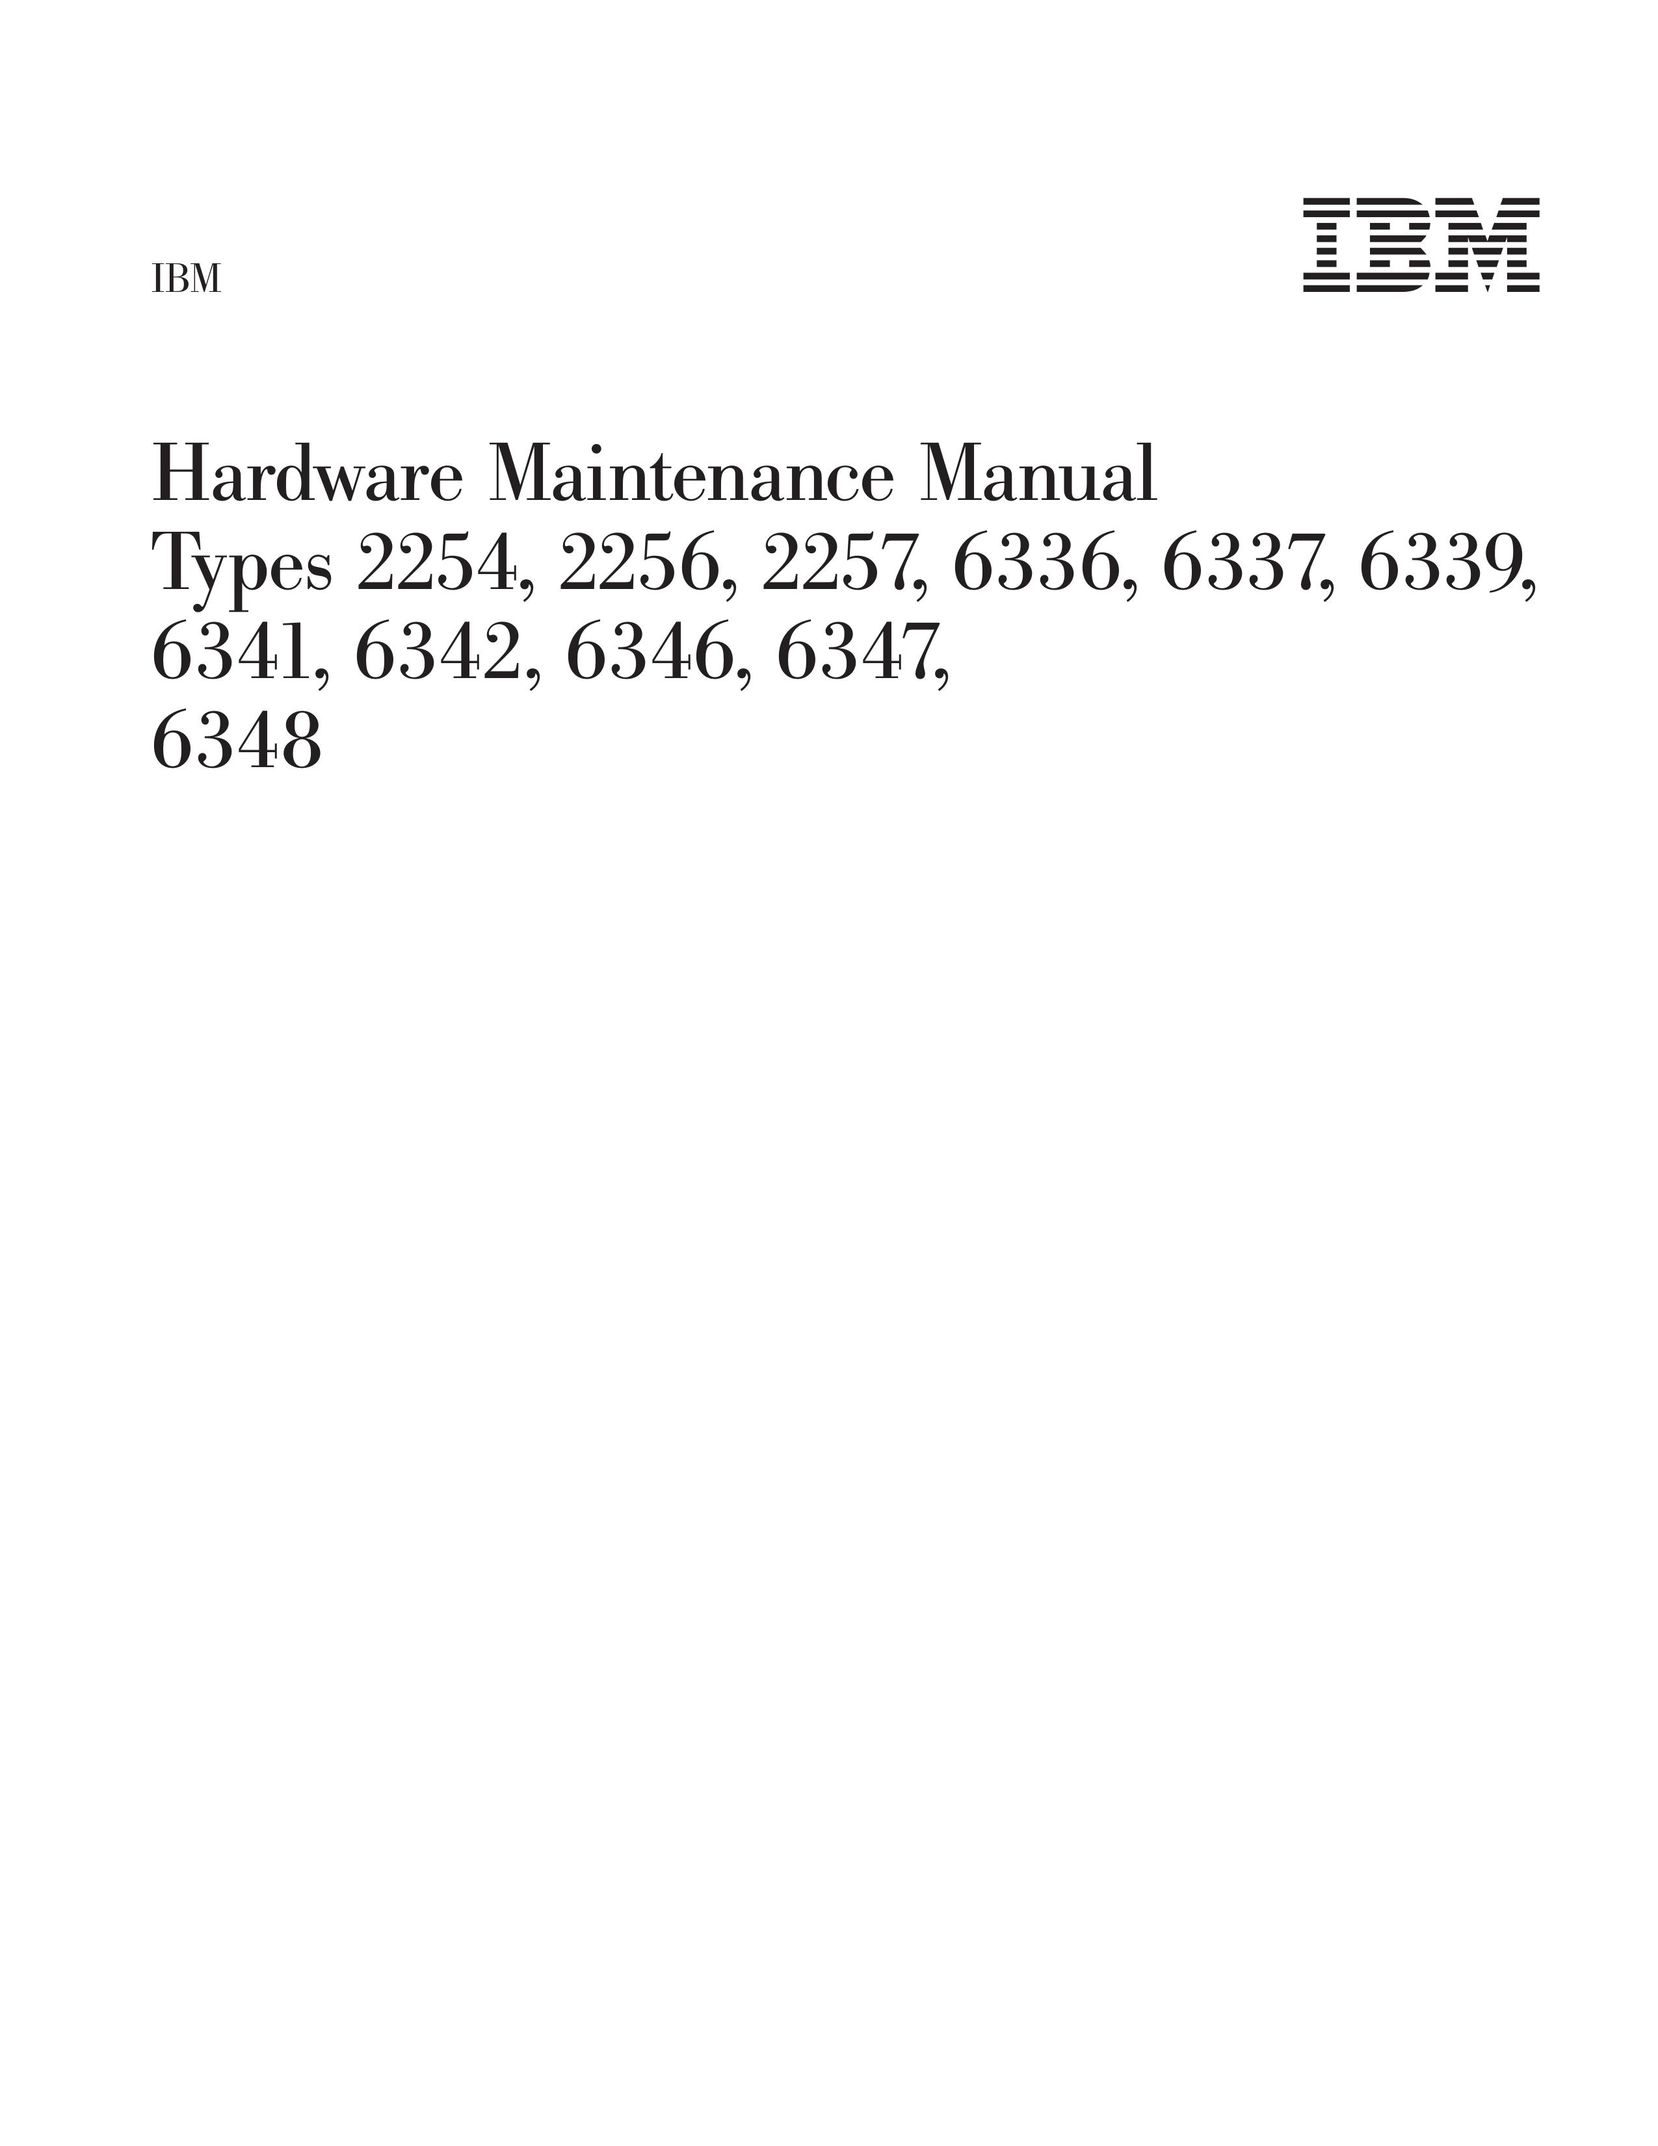 IBM 2257 Computer Hardware User Manual